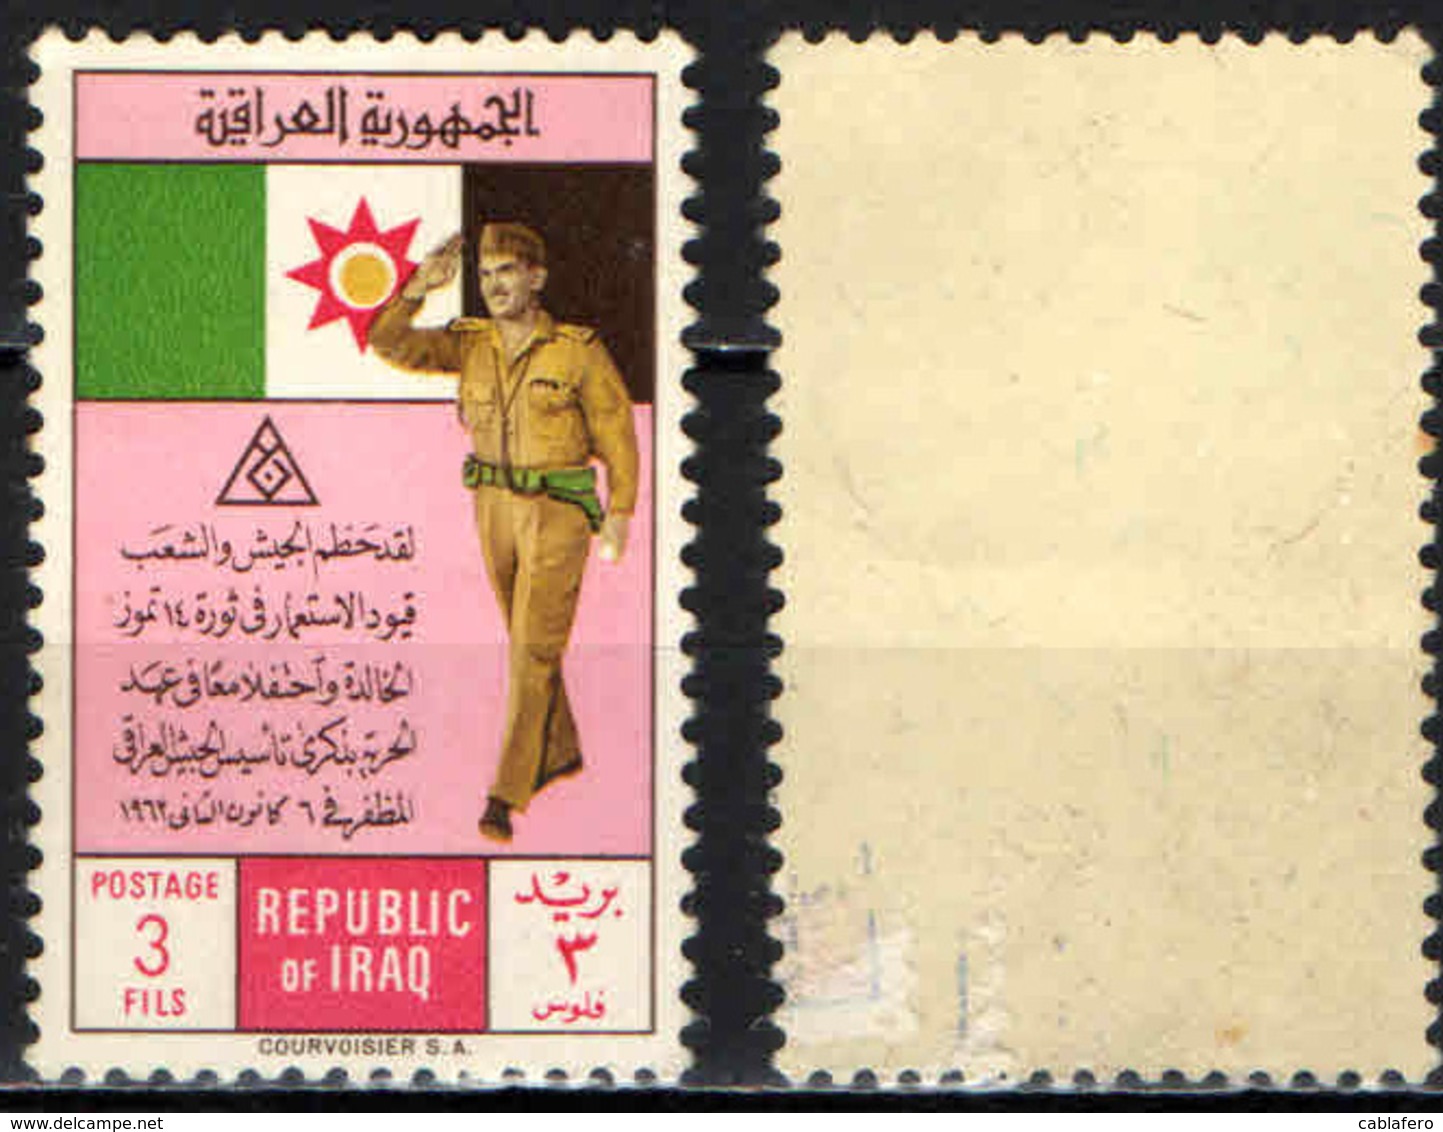 IRAQ - 1962 - ABDUL KARIM KASSEM - MH - Iraq